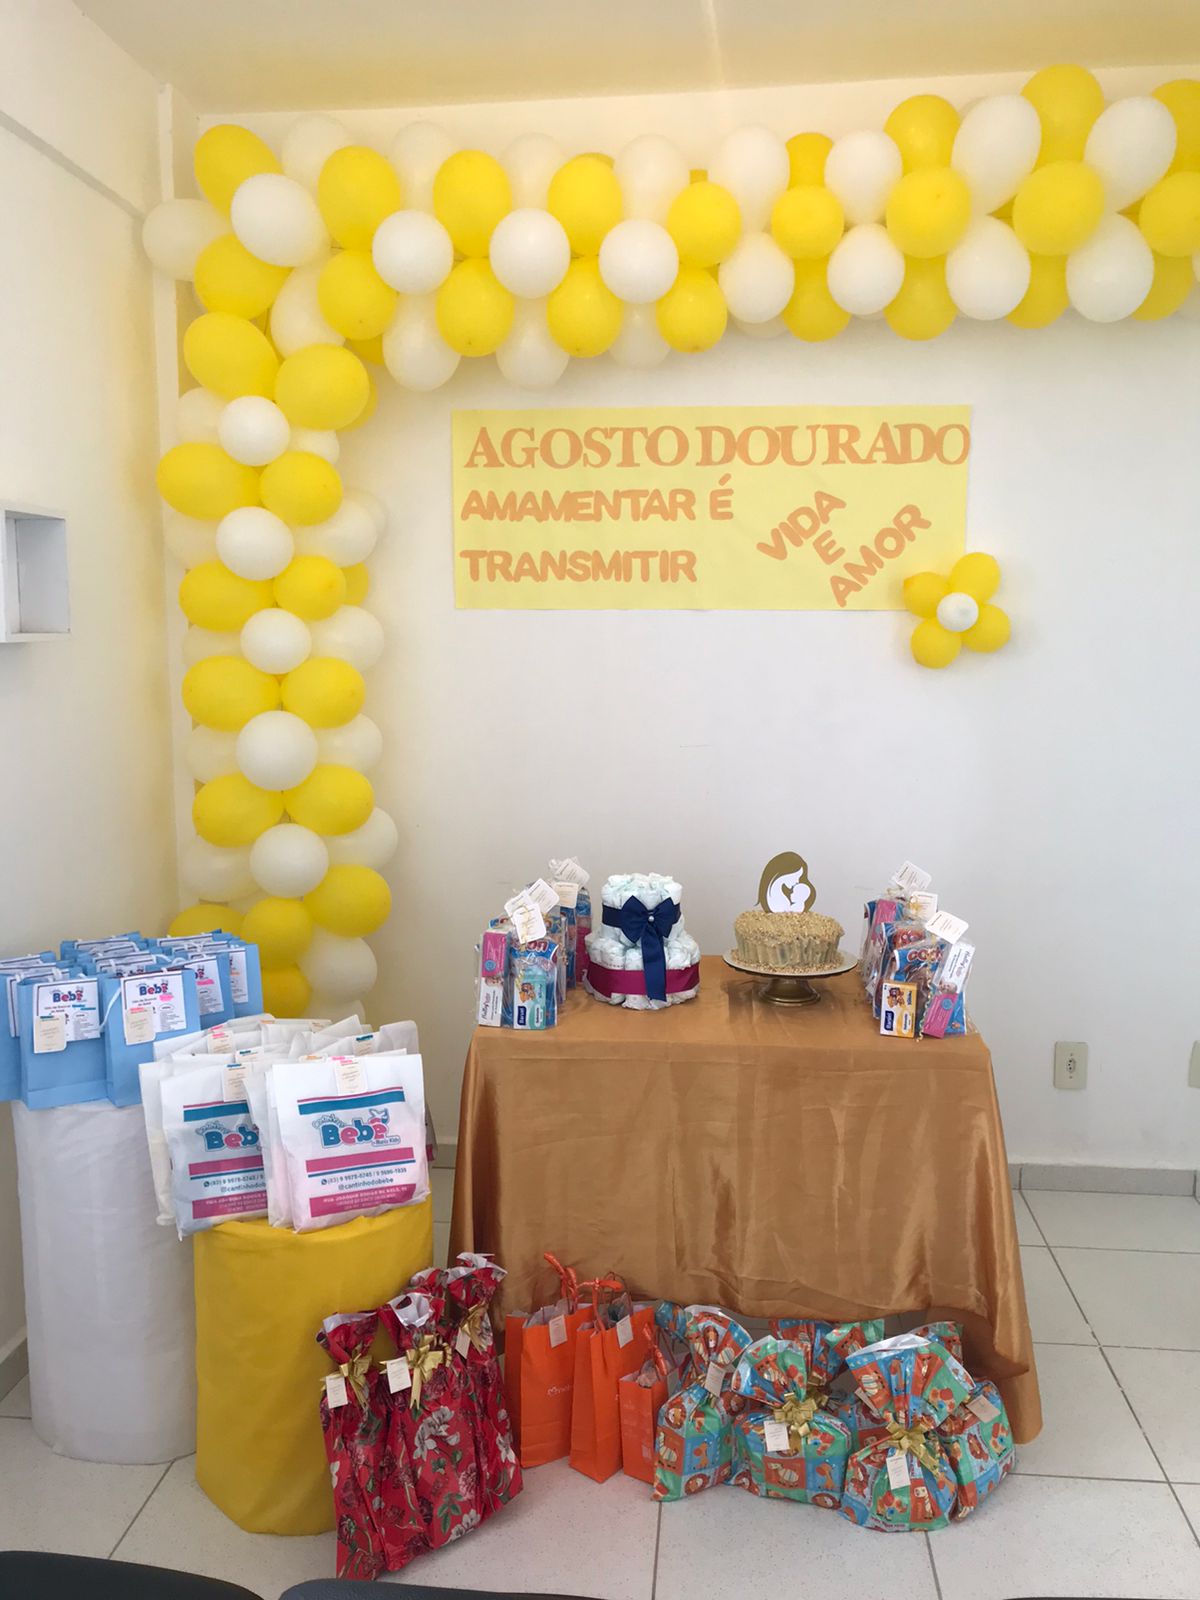 Agosto-Dourado-3 Secretaria de Saúde de Monteiro realiza ações na Campanha do Agosto Dourado para estimular a amamentação